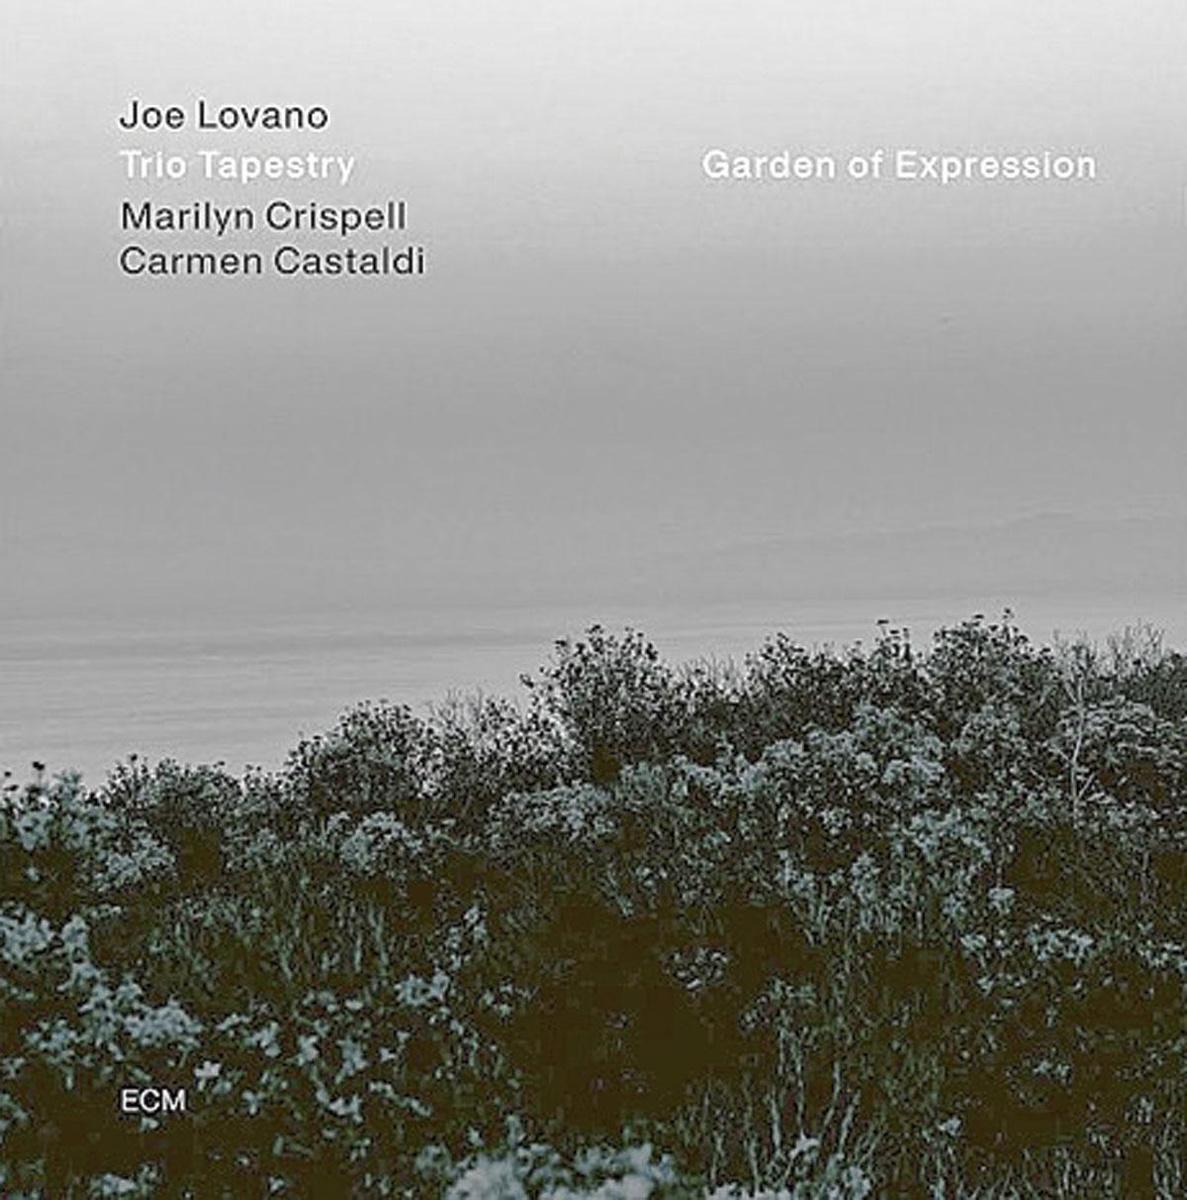 Joe Lovano Trio Tapestry (Marilyn Crispell / Carmen Castaldi) 